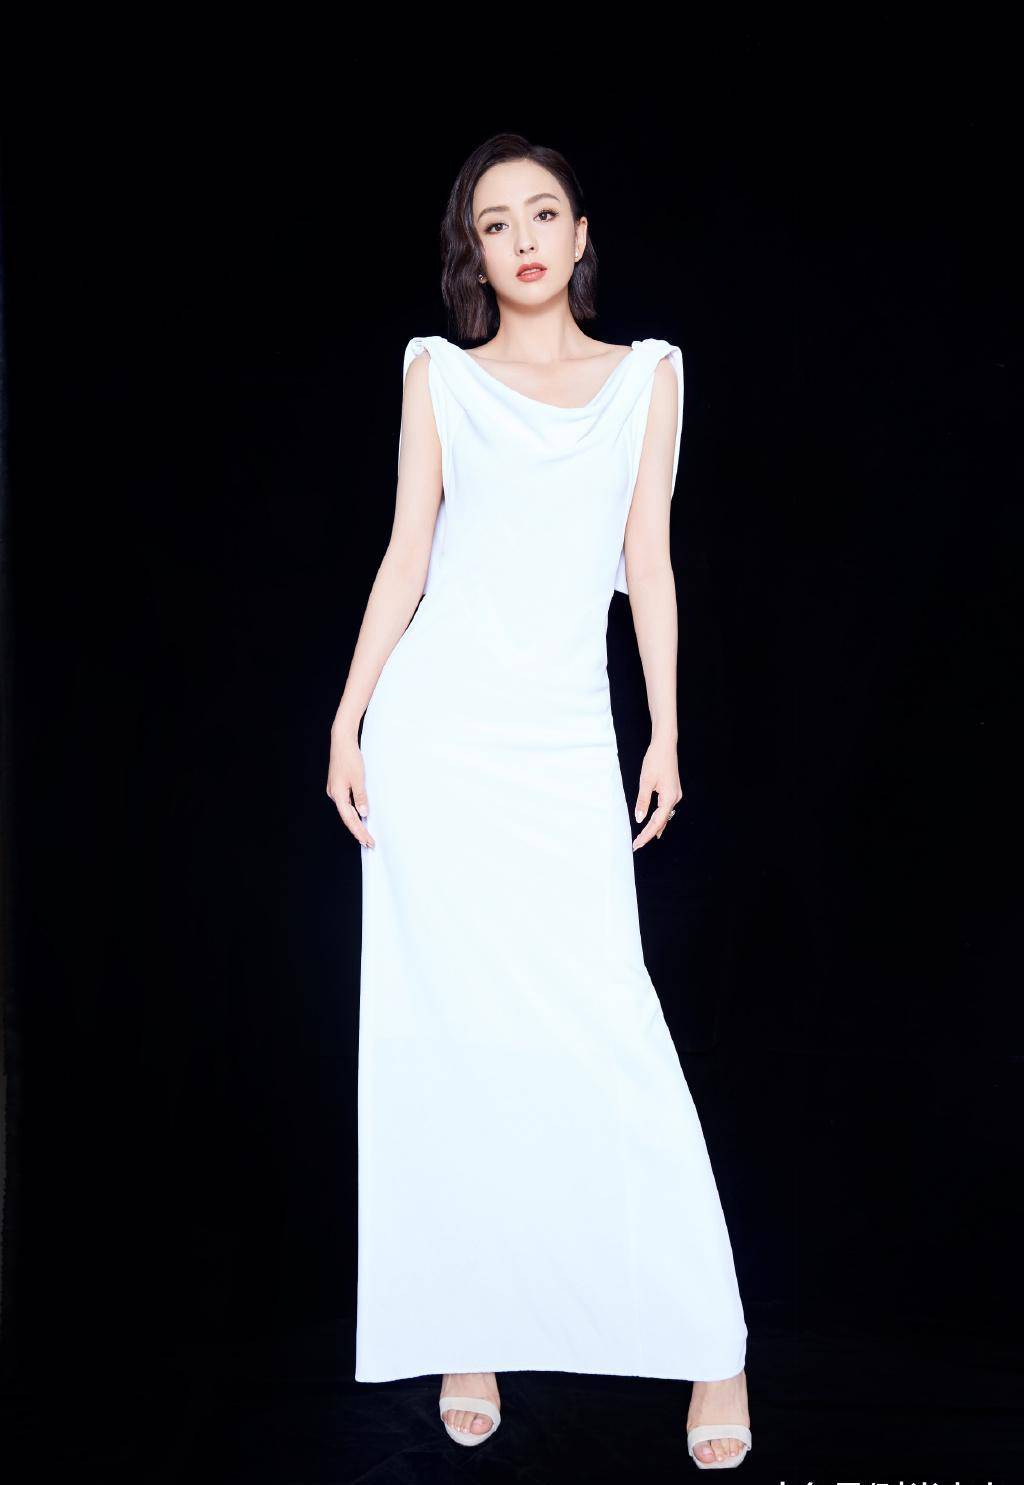 原创佟丽娅出席活动穿白色连衣裙知性大气转身小露美背吸睛十足